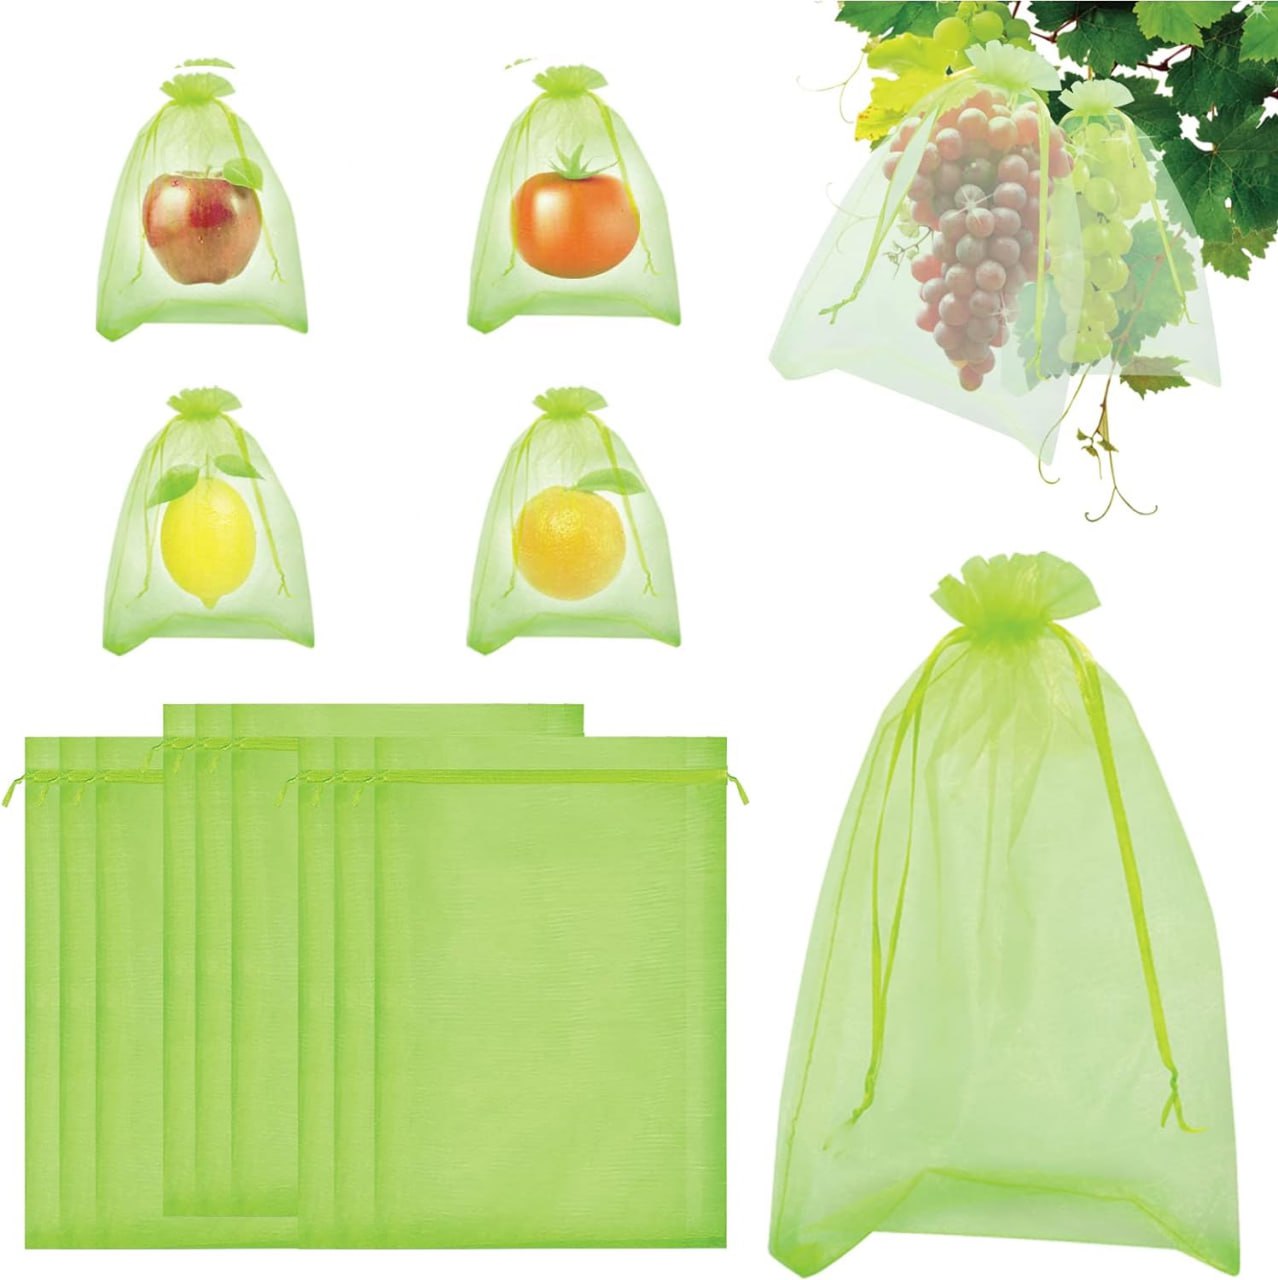 Fruit bags